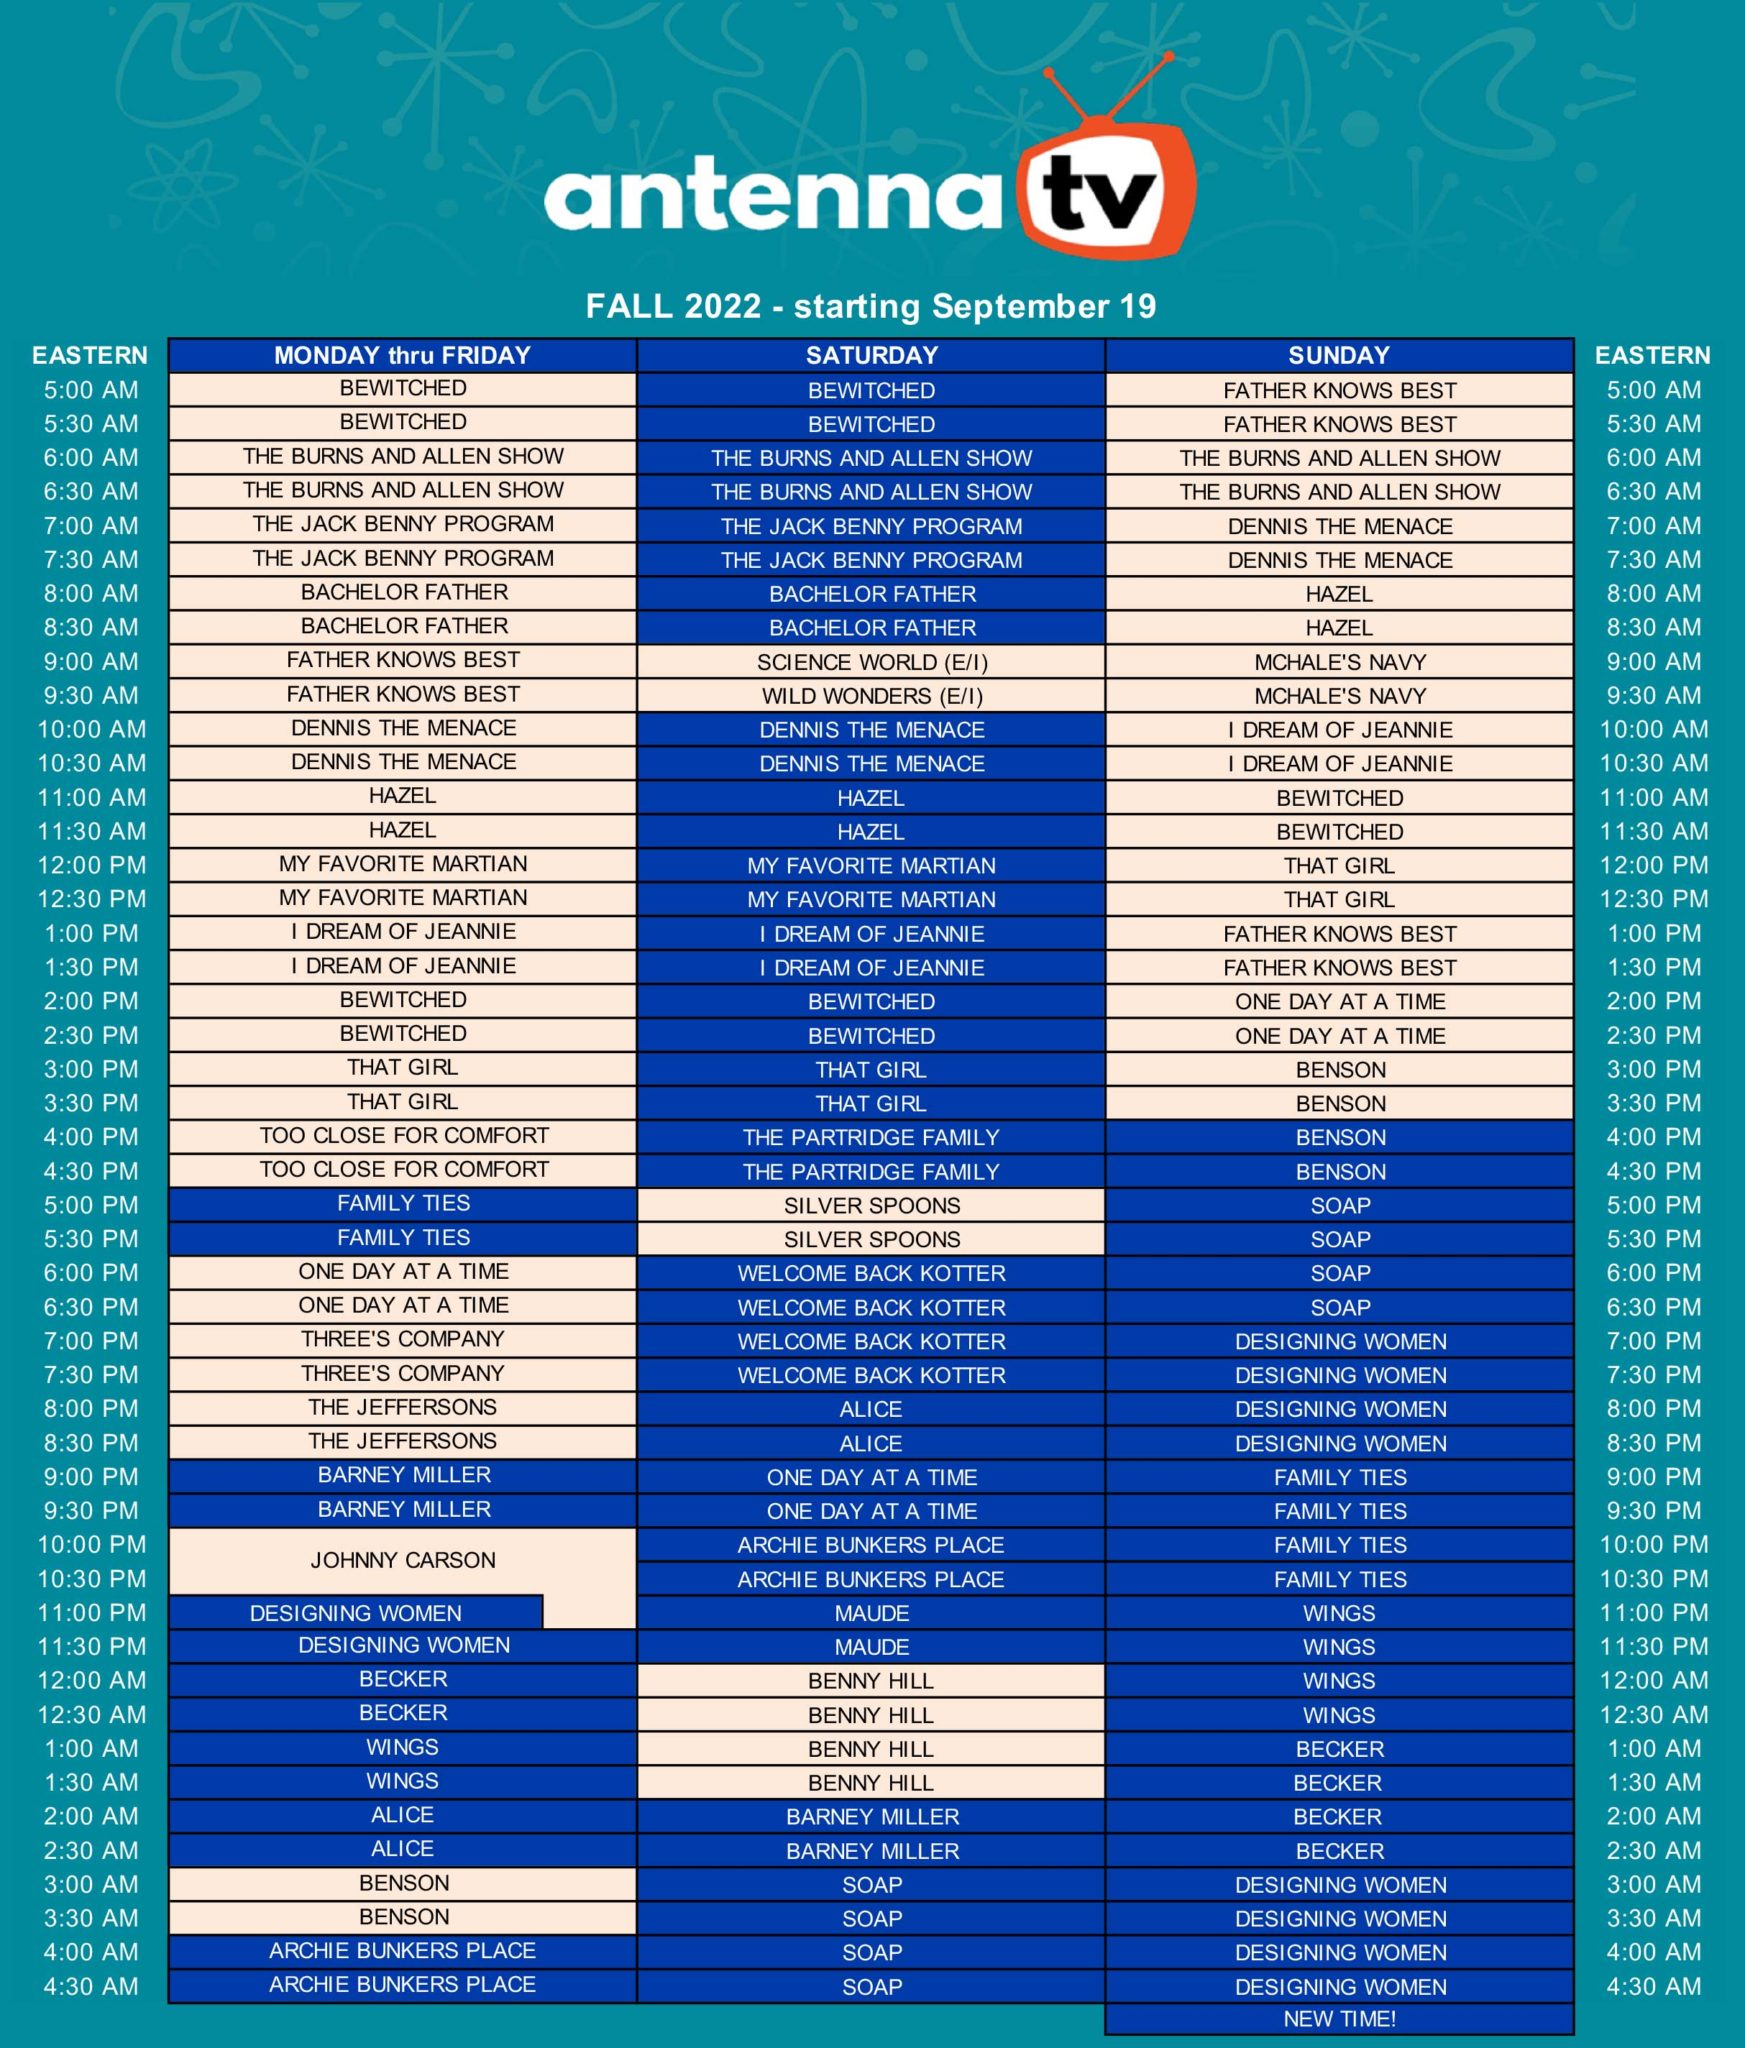 Eastern Schedule - Antenna TV